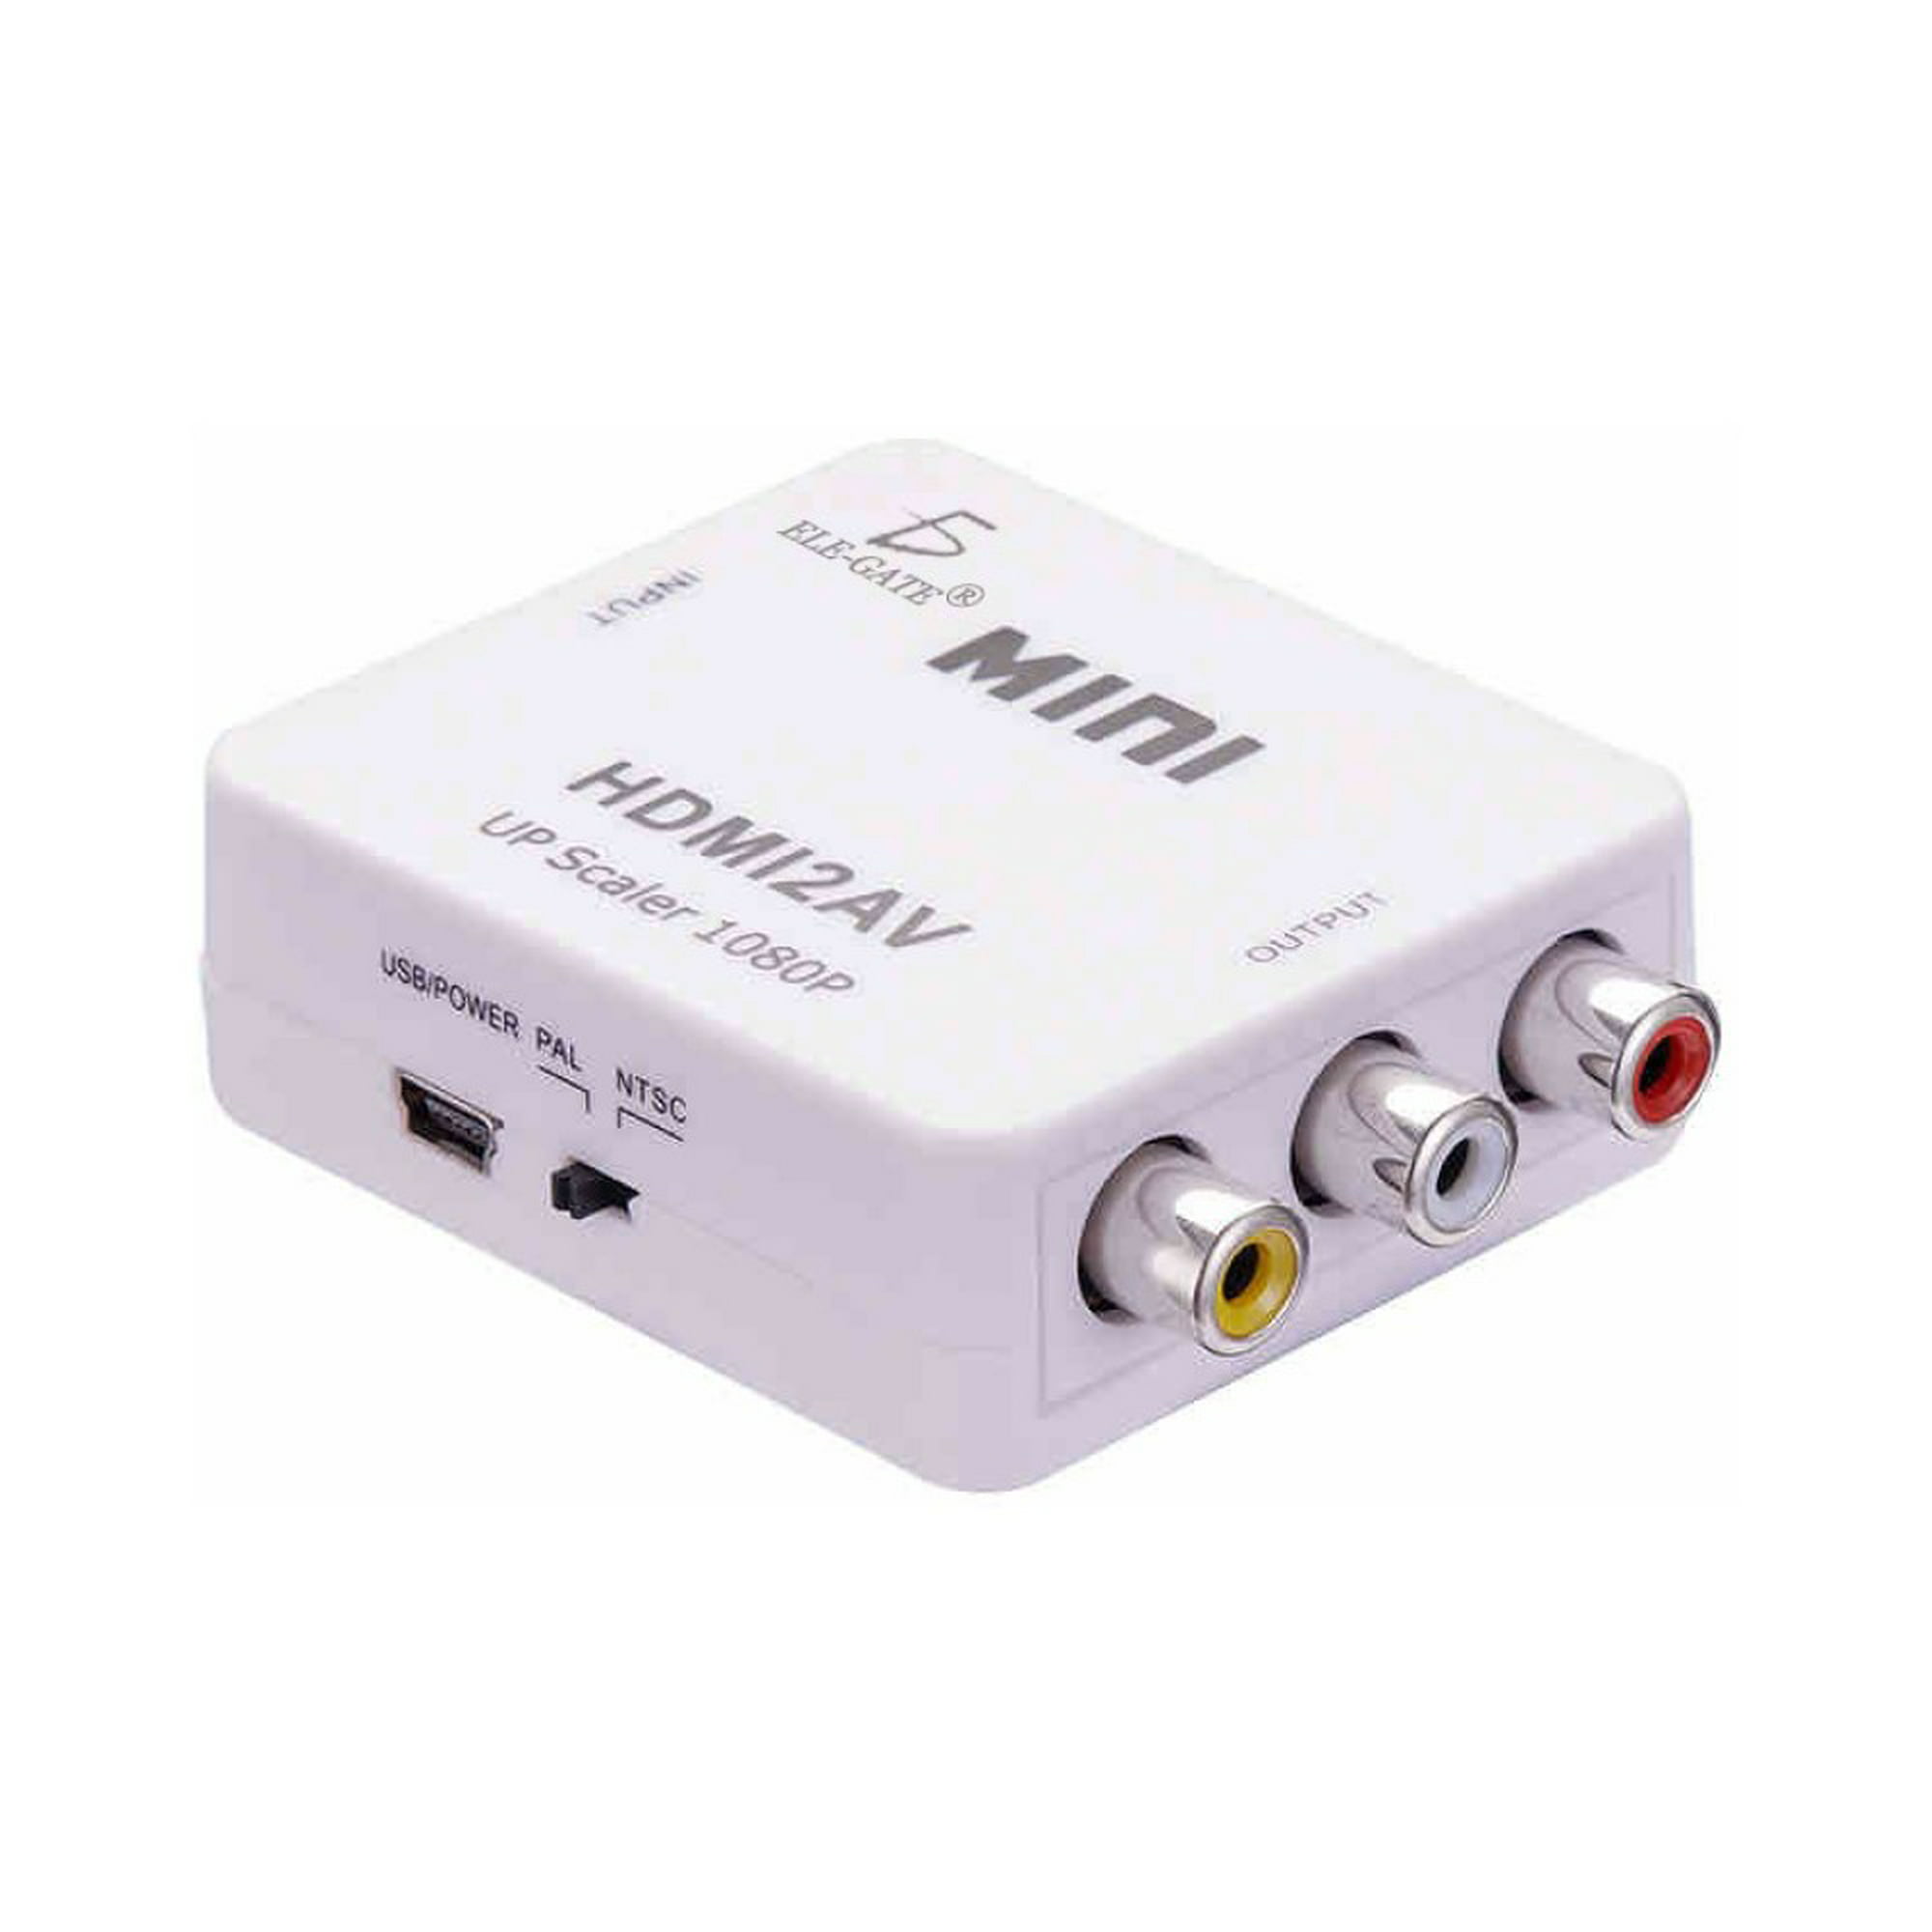 CONVERTIDOR HDMI - RCA  Linio Colombia - GE063EL0588BBLCO